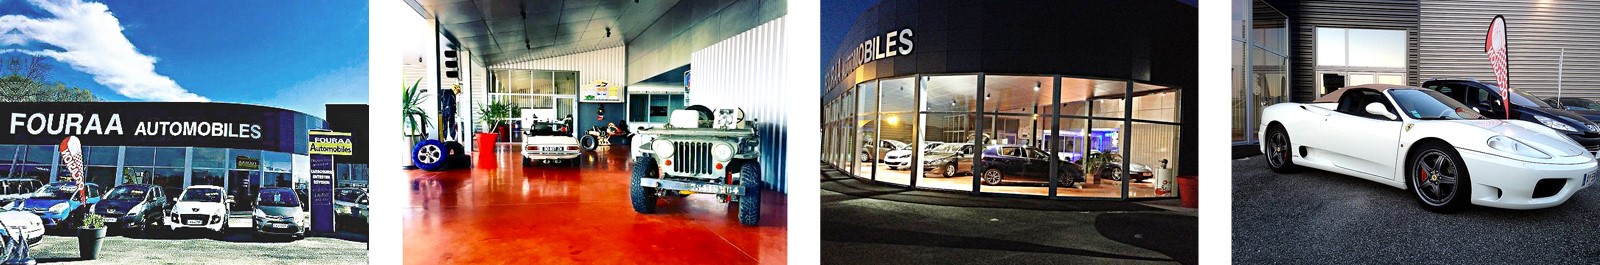 Garage Fouraa | Réparations mécaniques, carrosserie et peinture, vente de pièces détachées automobiles, carrosserie bordes, dépannage auto bordes | Nay, Bordes (64)